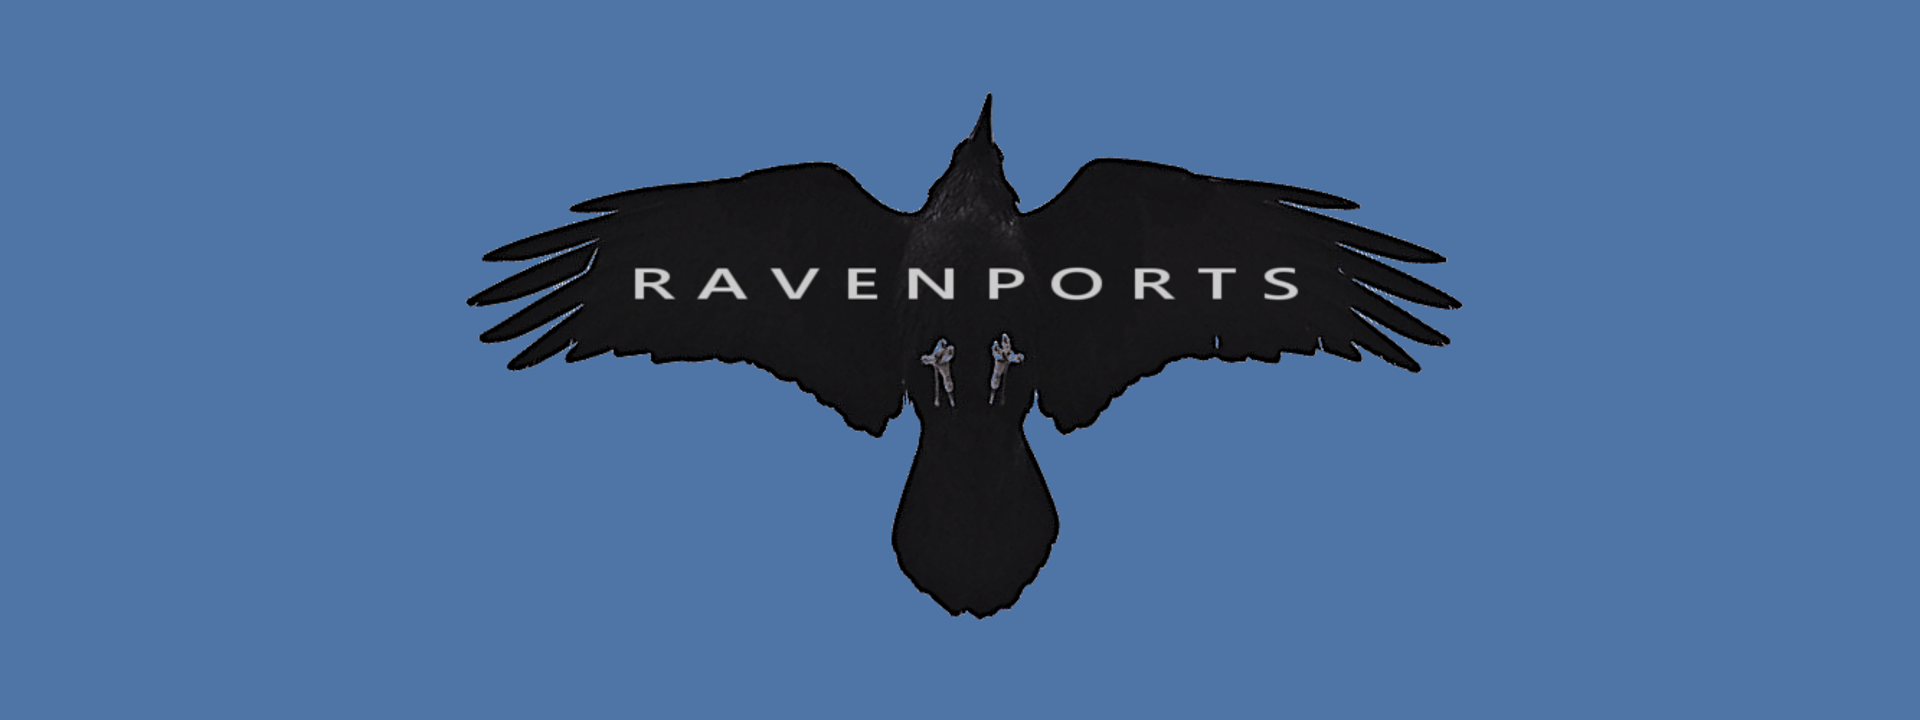 Slider 4: Ravenports logo